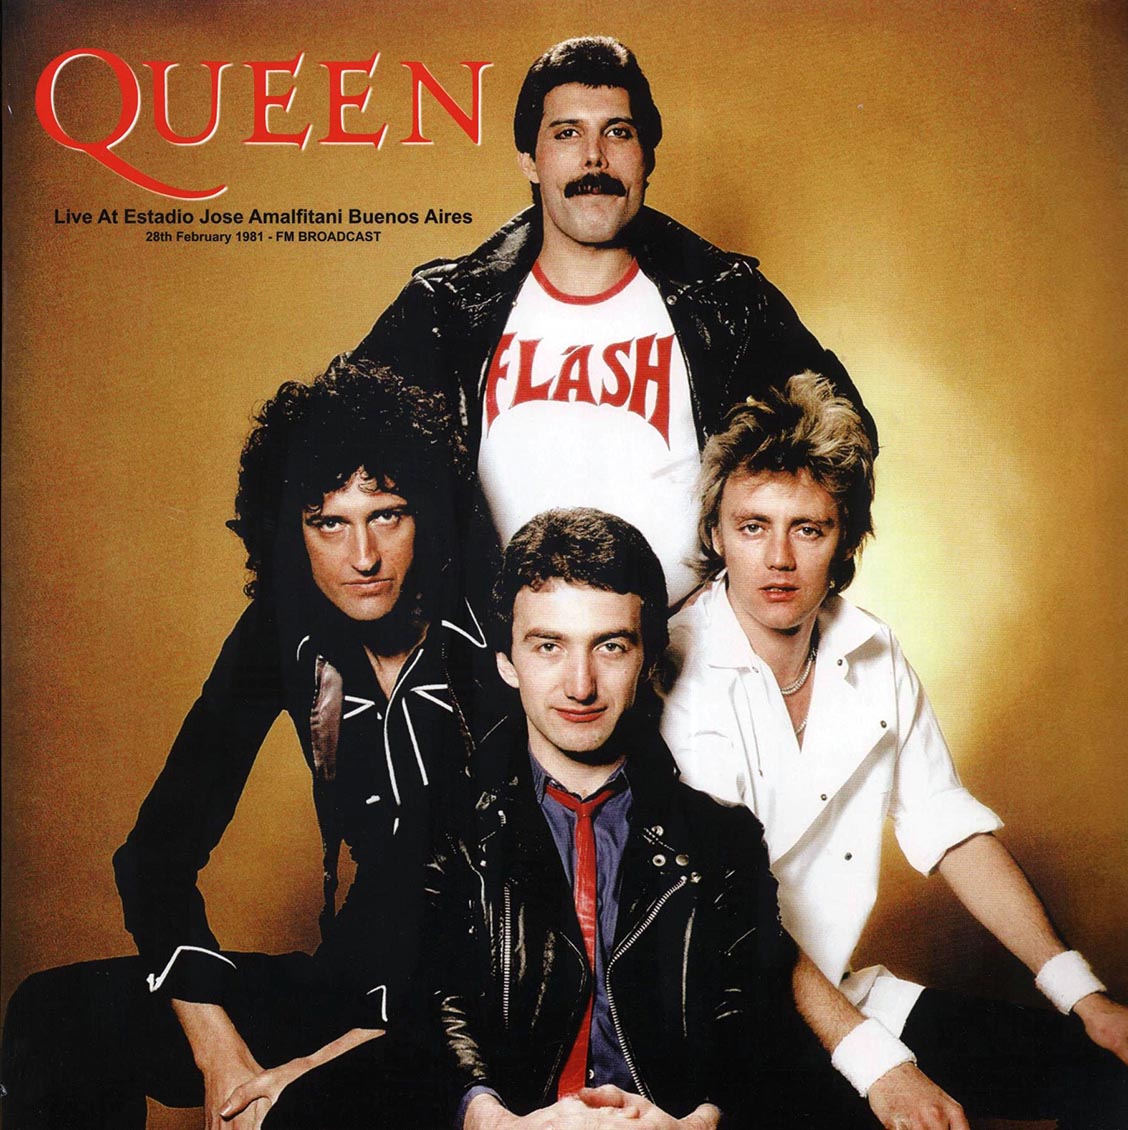 Queen - Live At Estadio Jose Amalfitani Buenos Aires, 28th February 1981